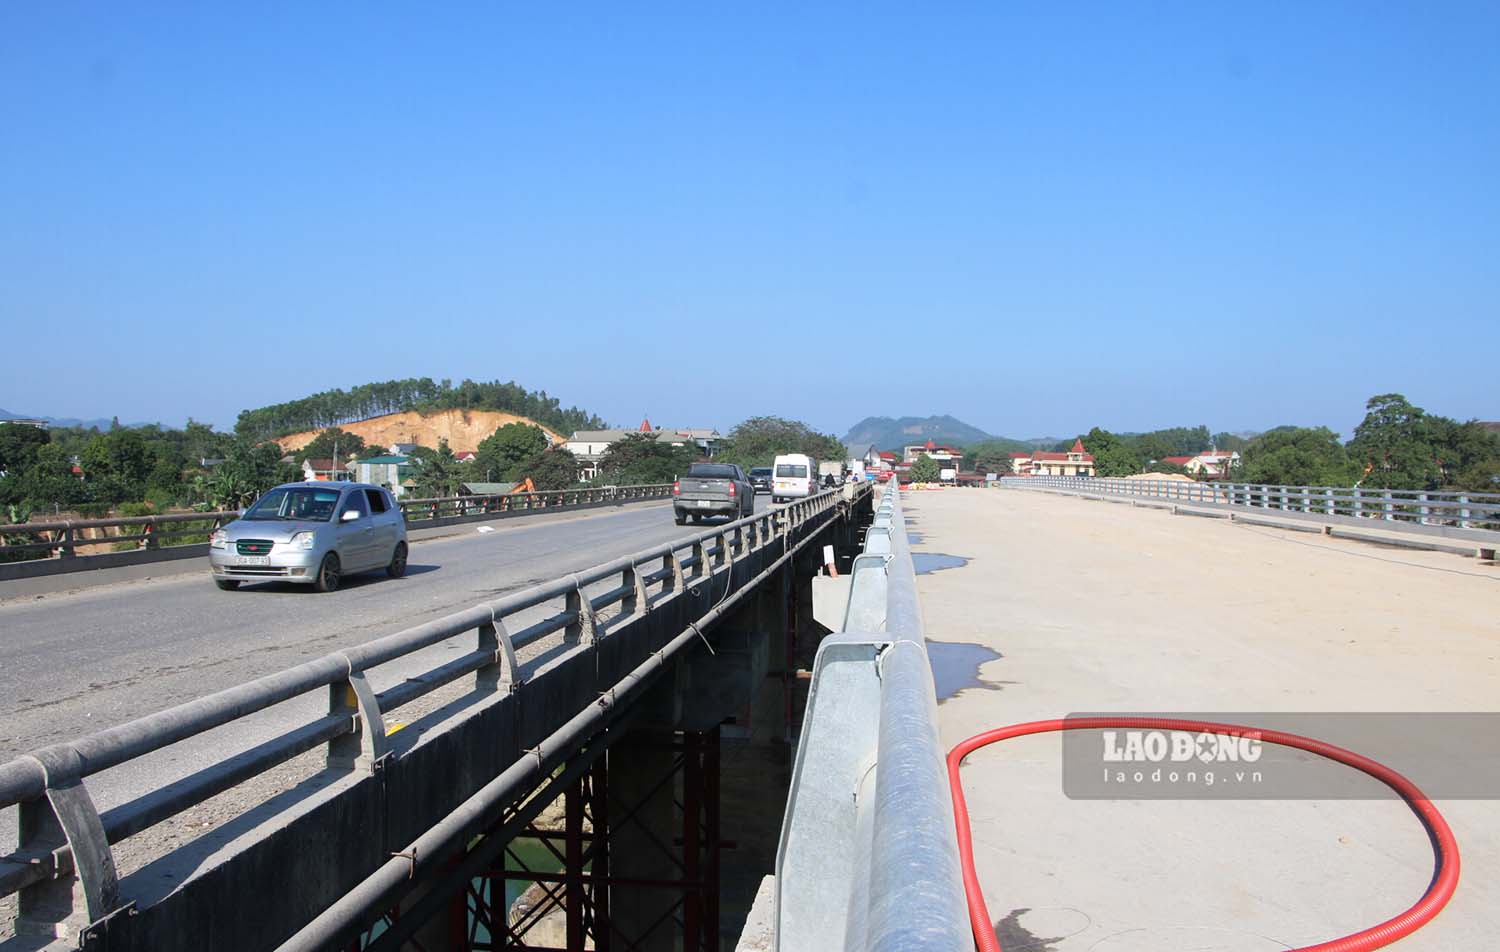 Phần mặt cầu, lan can cầu đã thi công xong hiện đang chờ được thảm nhựa mặt đường. Trong khi đó các phương tiện vẫn lưu thông bình thường qua cầu Đoan Hùng cũ. 